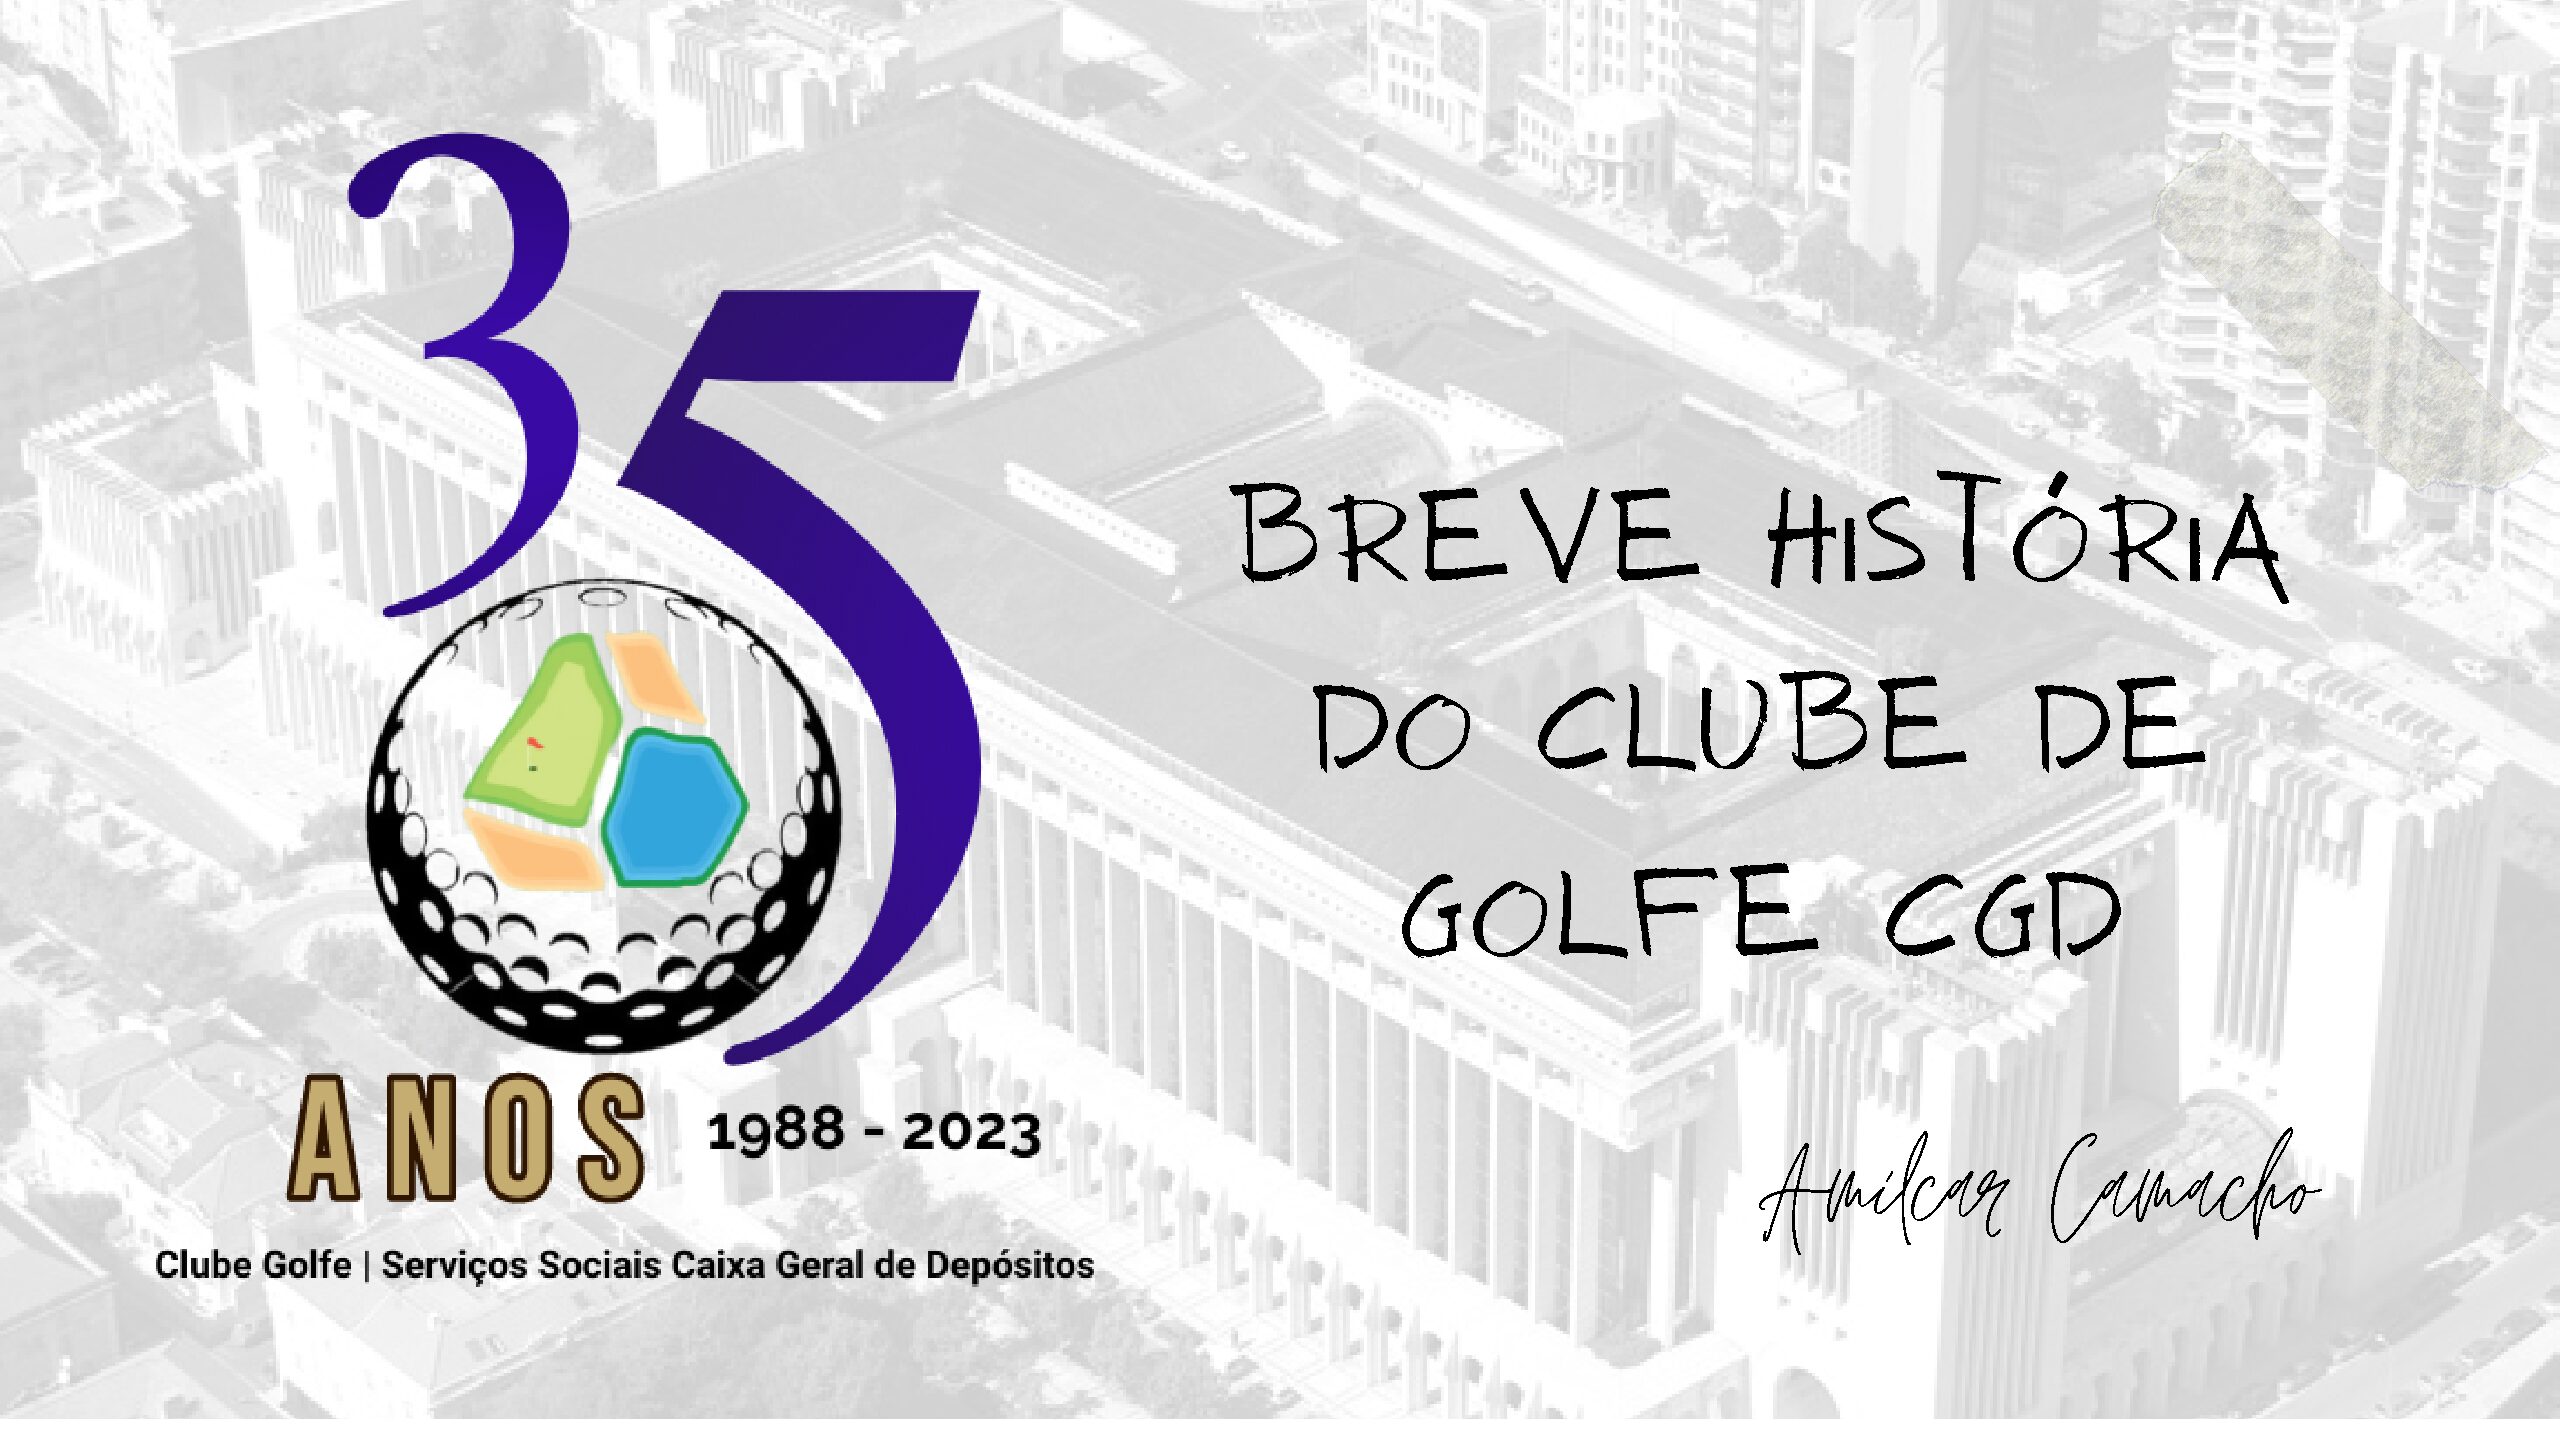 Breve História do Clube de Golfe CGD